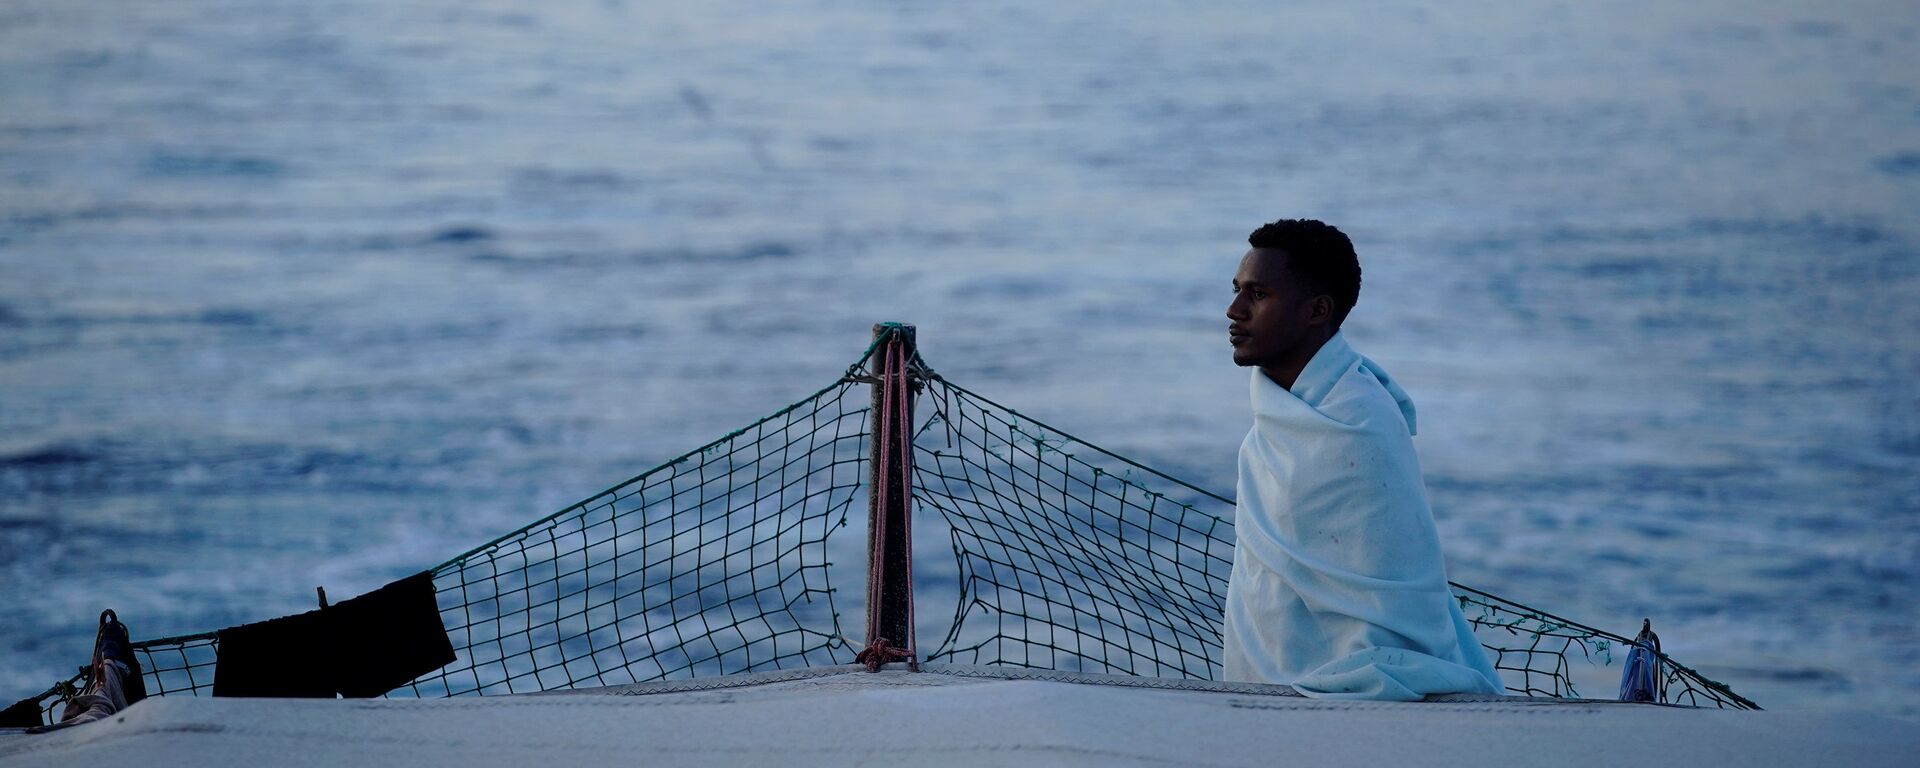 Los migrantes en el barco de la ONG Open Arms en Mediterráneo - Sputnik Mundo, 1920, 07.08.2018